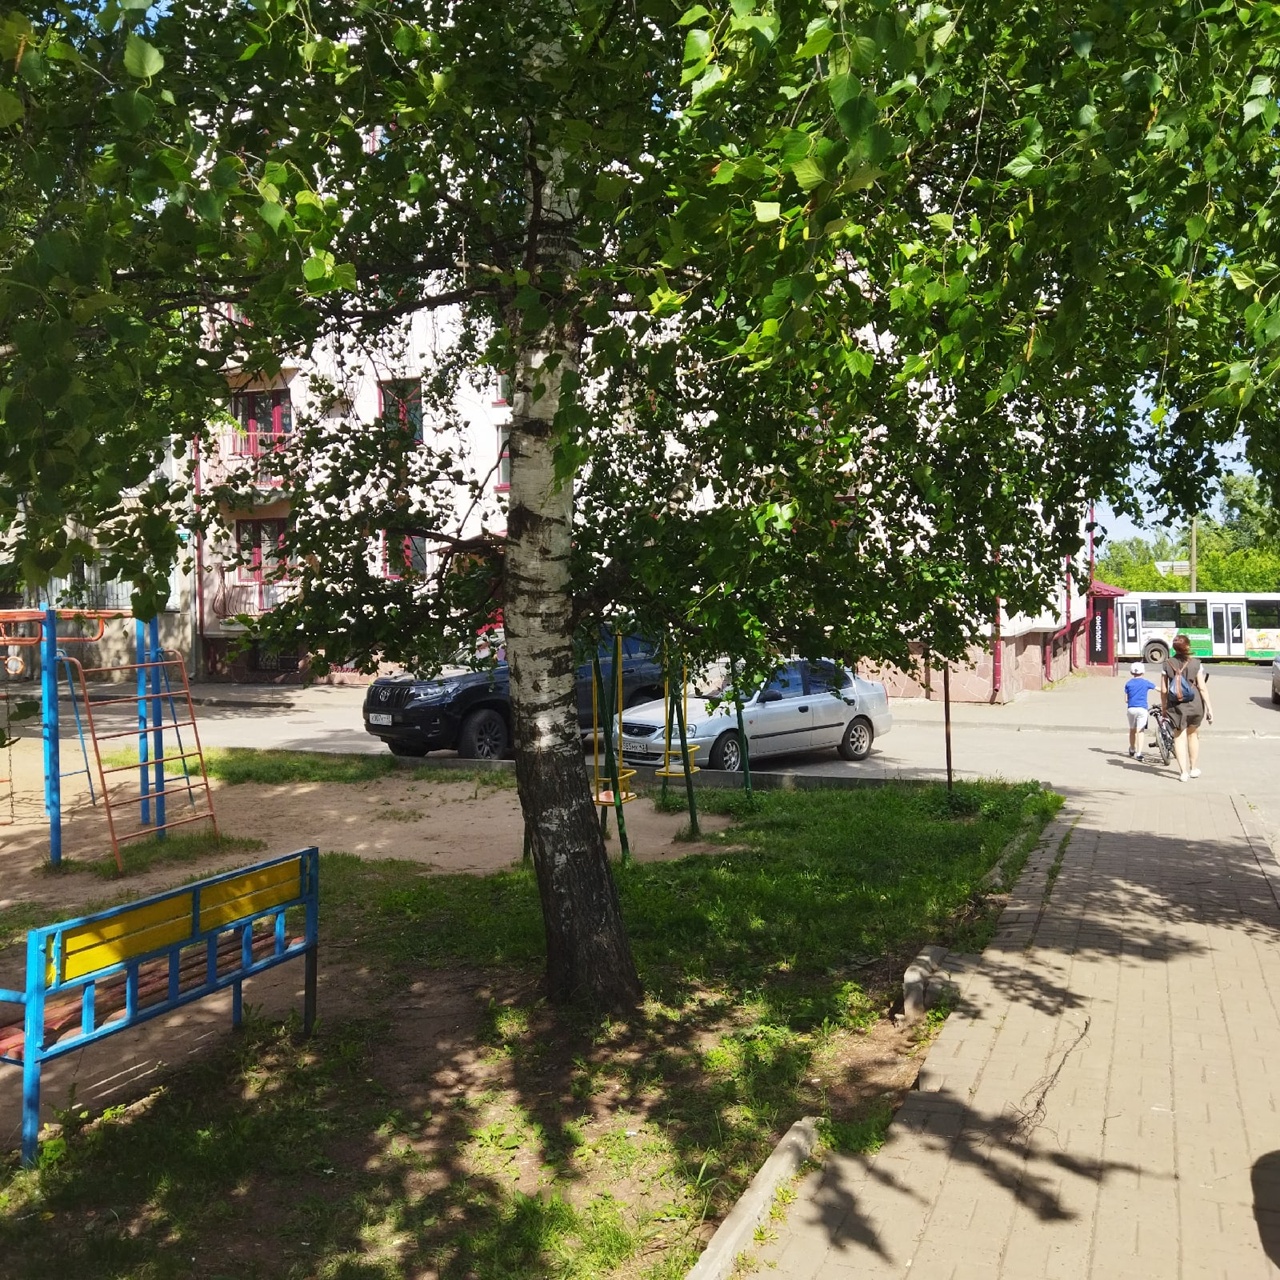 До +22 и солнечно: прогноз погоды на выходные в Кирово-Чепецке